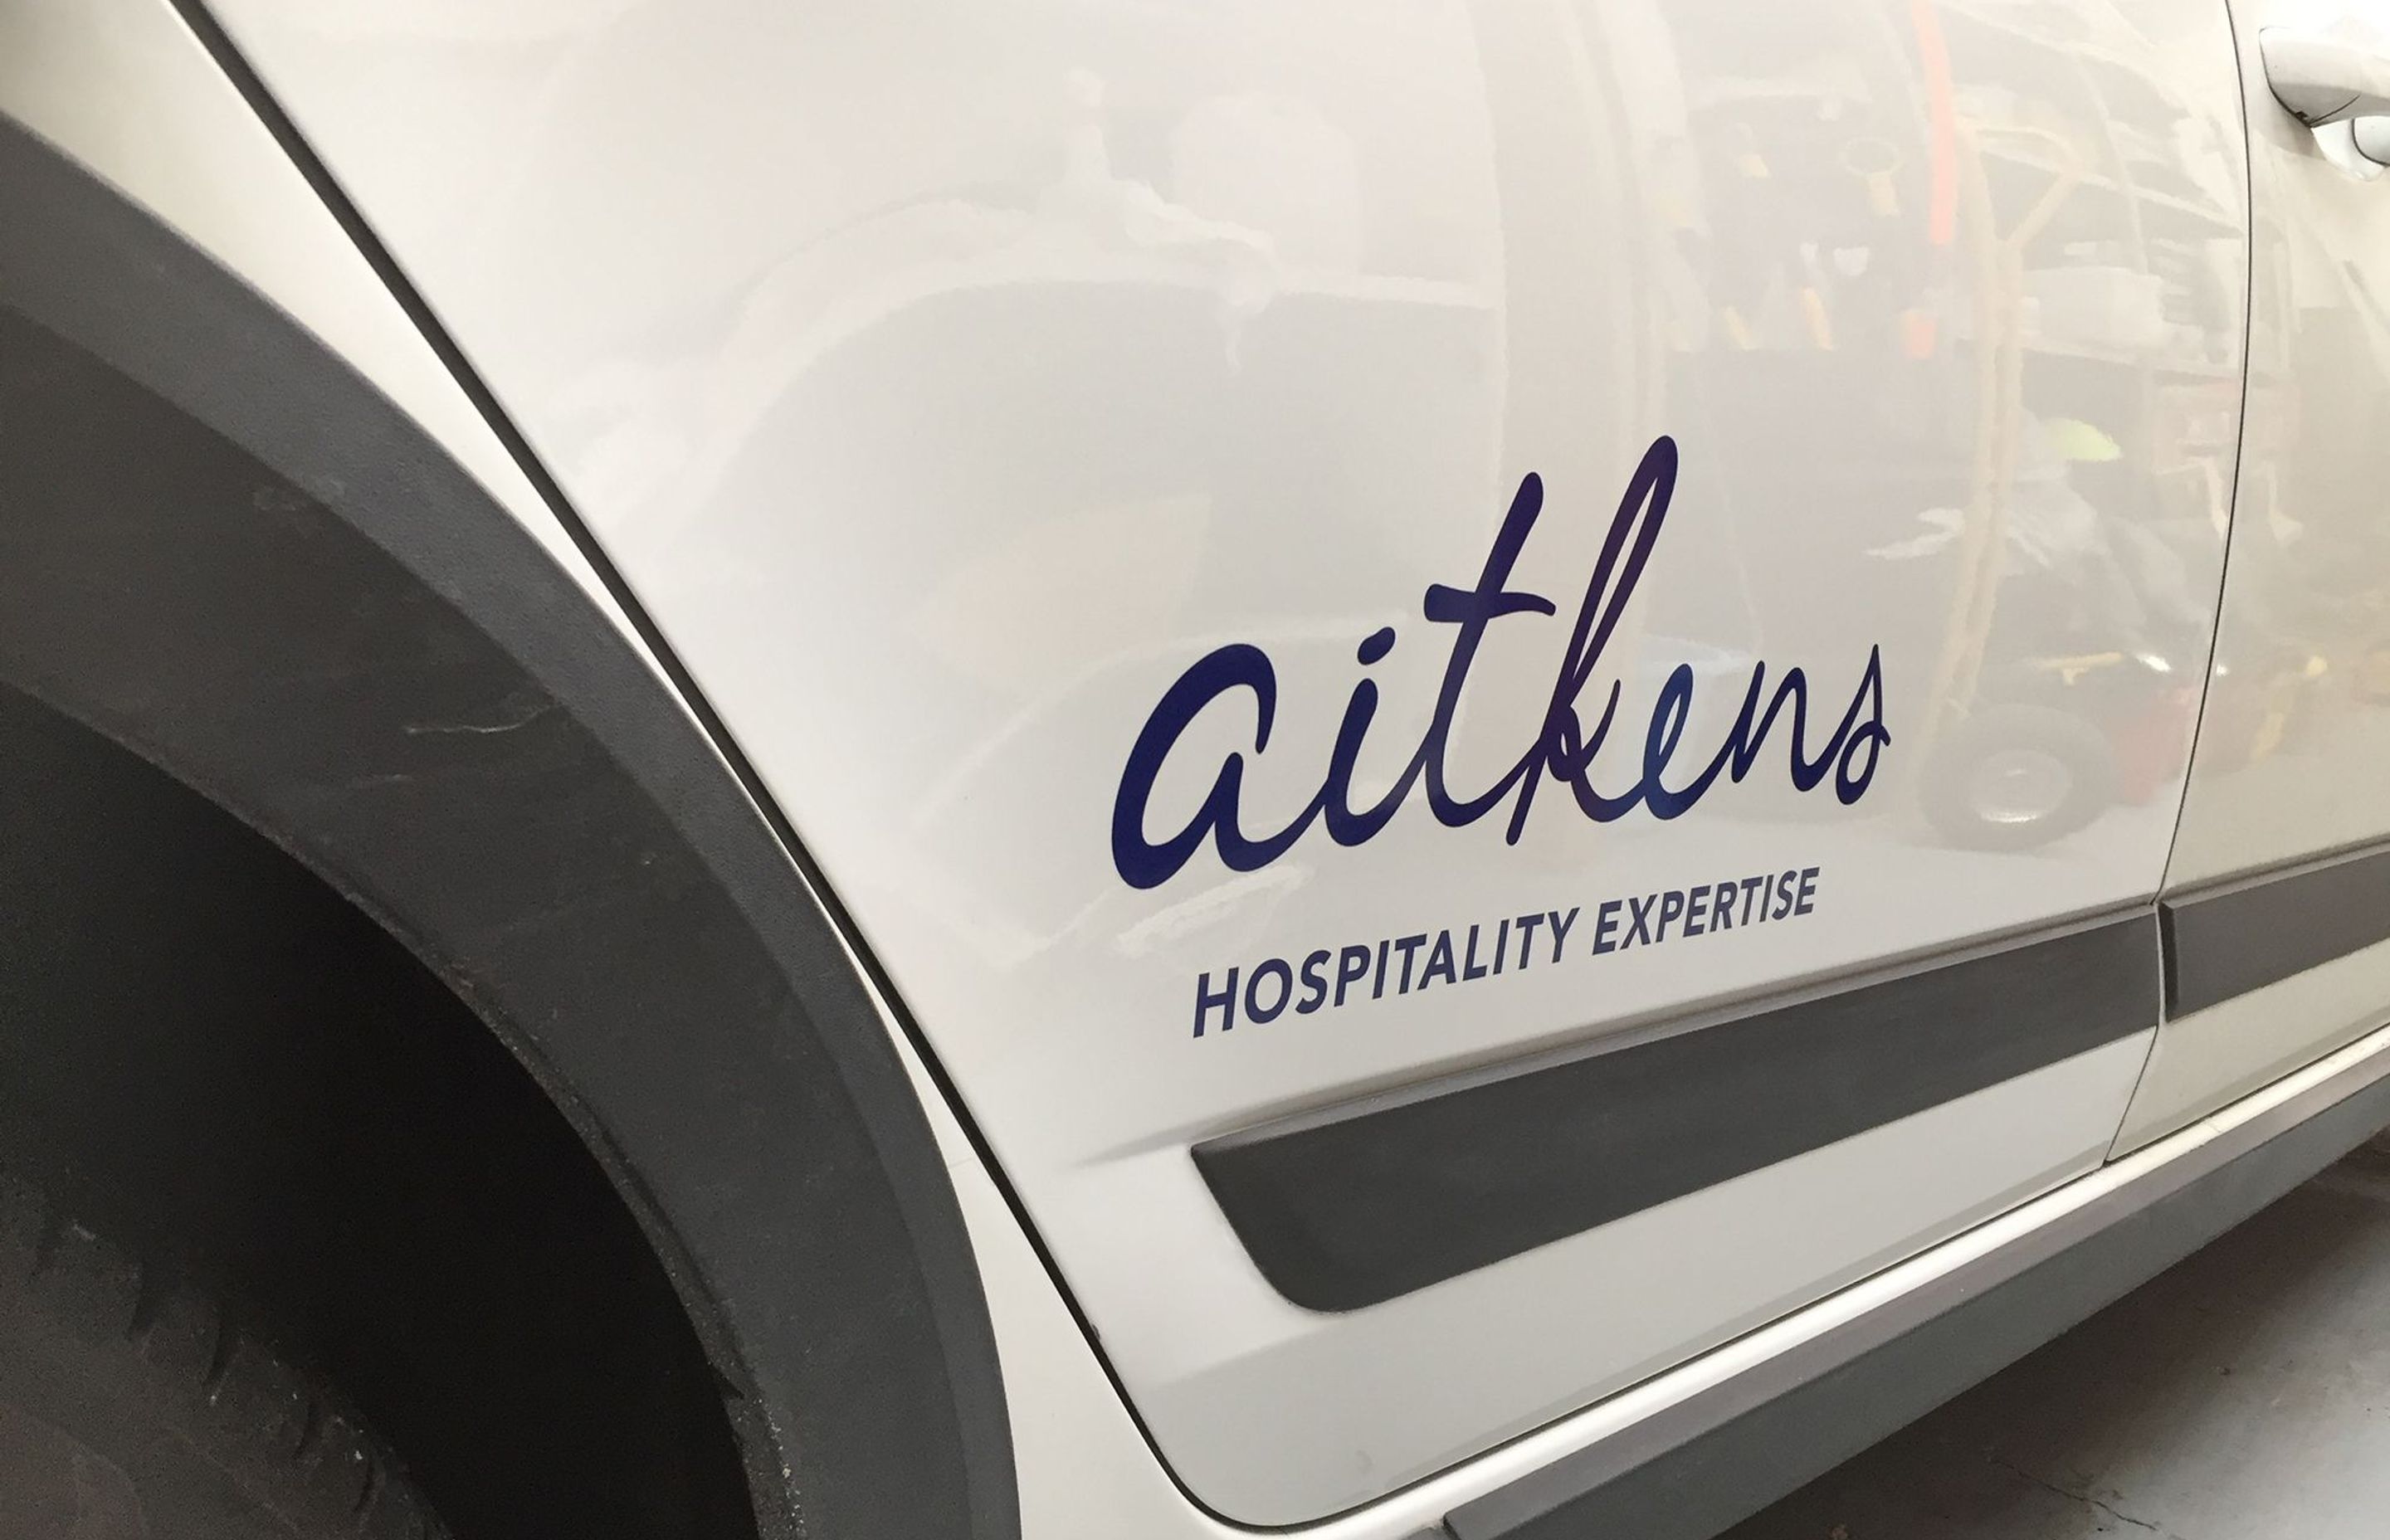 Vehicle signage for Aitkens, Dunedin